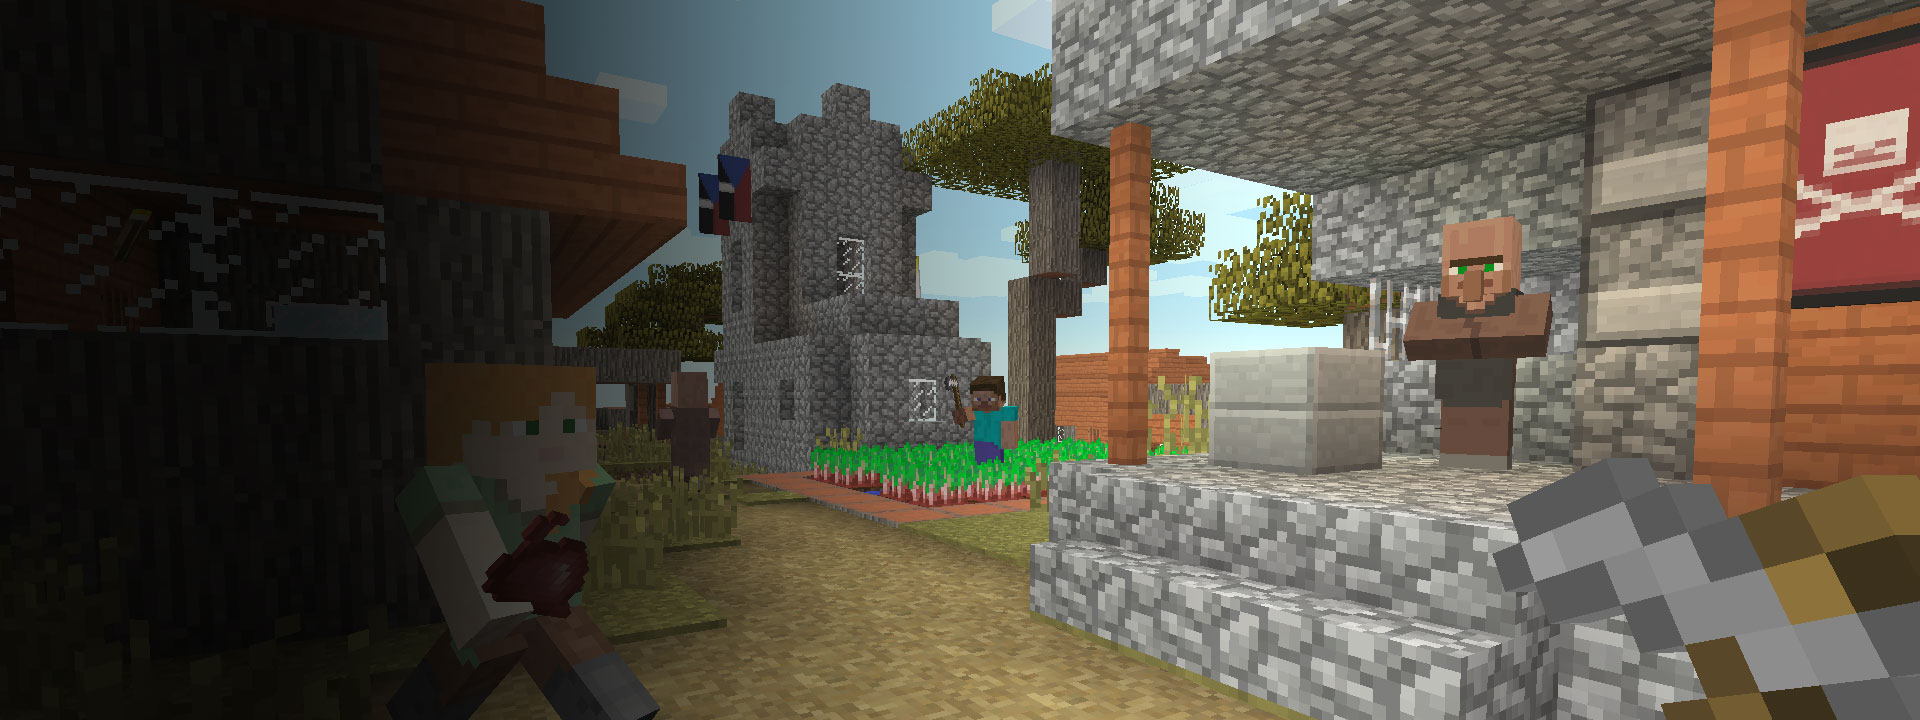 Wiele domów i postaci z Minecrafta chodzących na pierwszym planie.